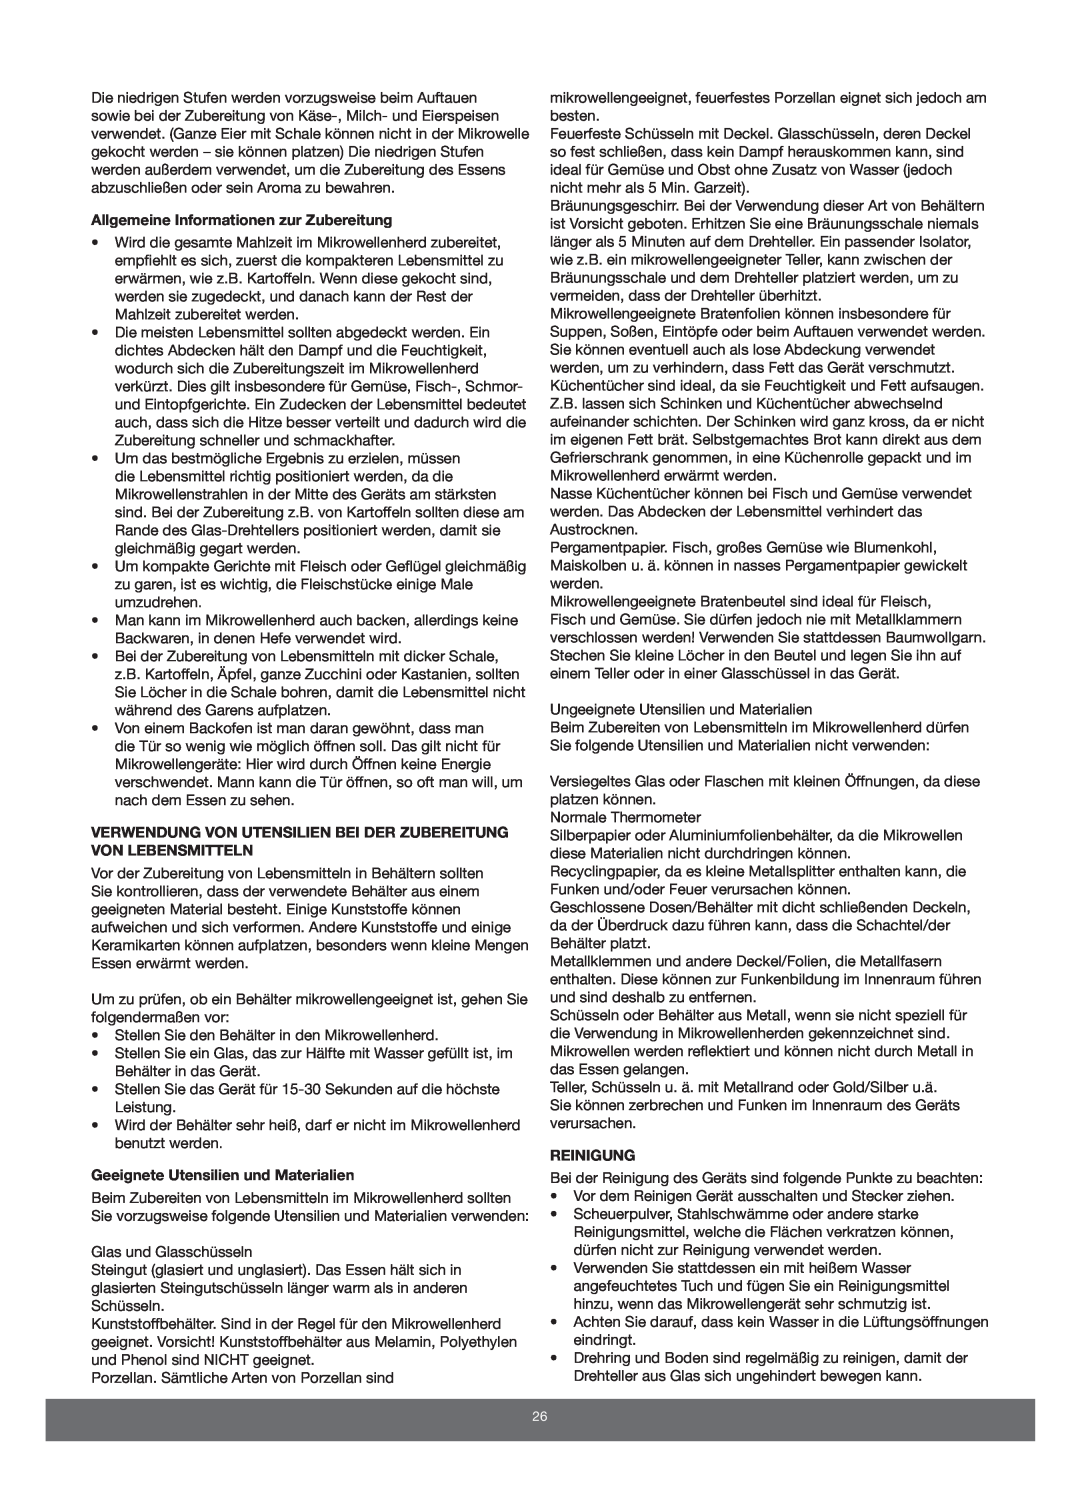 Melissa 653-089 manual Allgemeine Informationen zur Zubereitung, Geeignete Utensilien und Materialien, Reinigung 